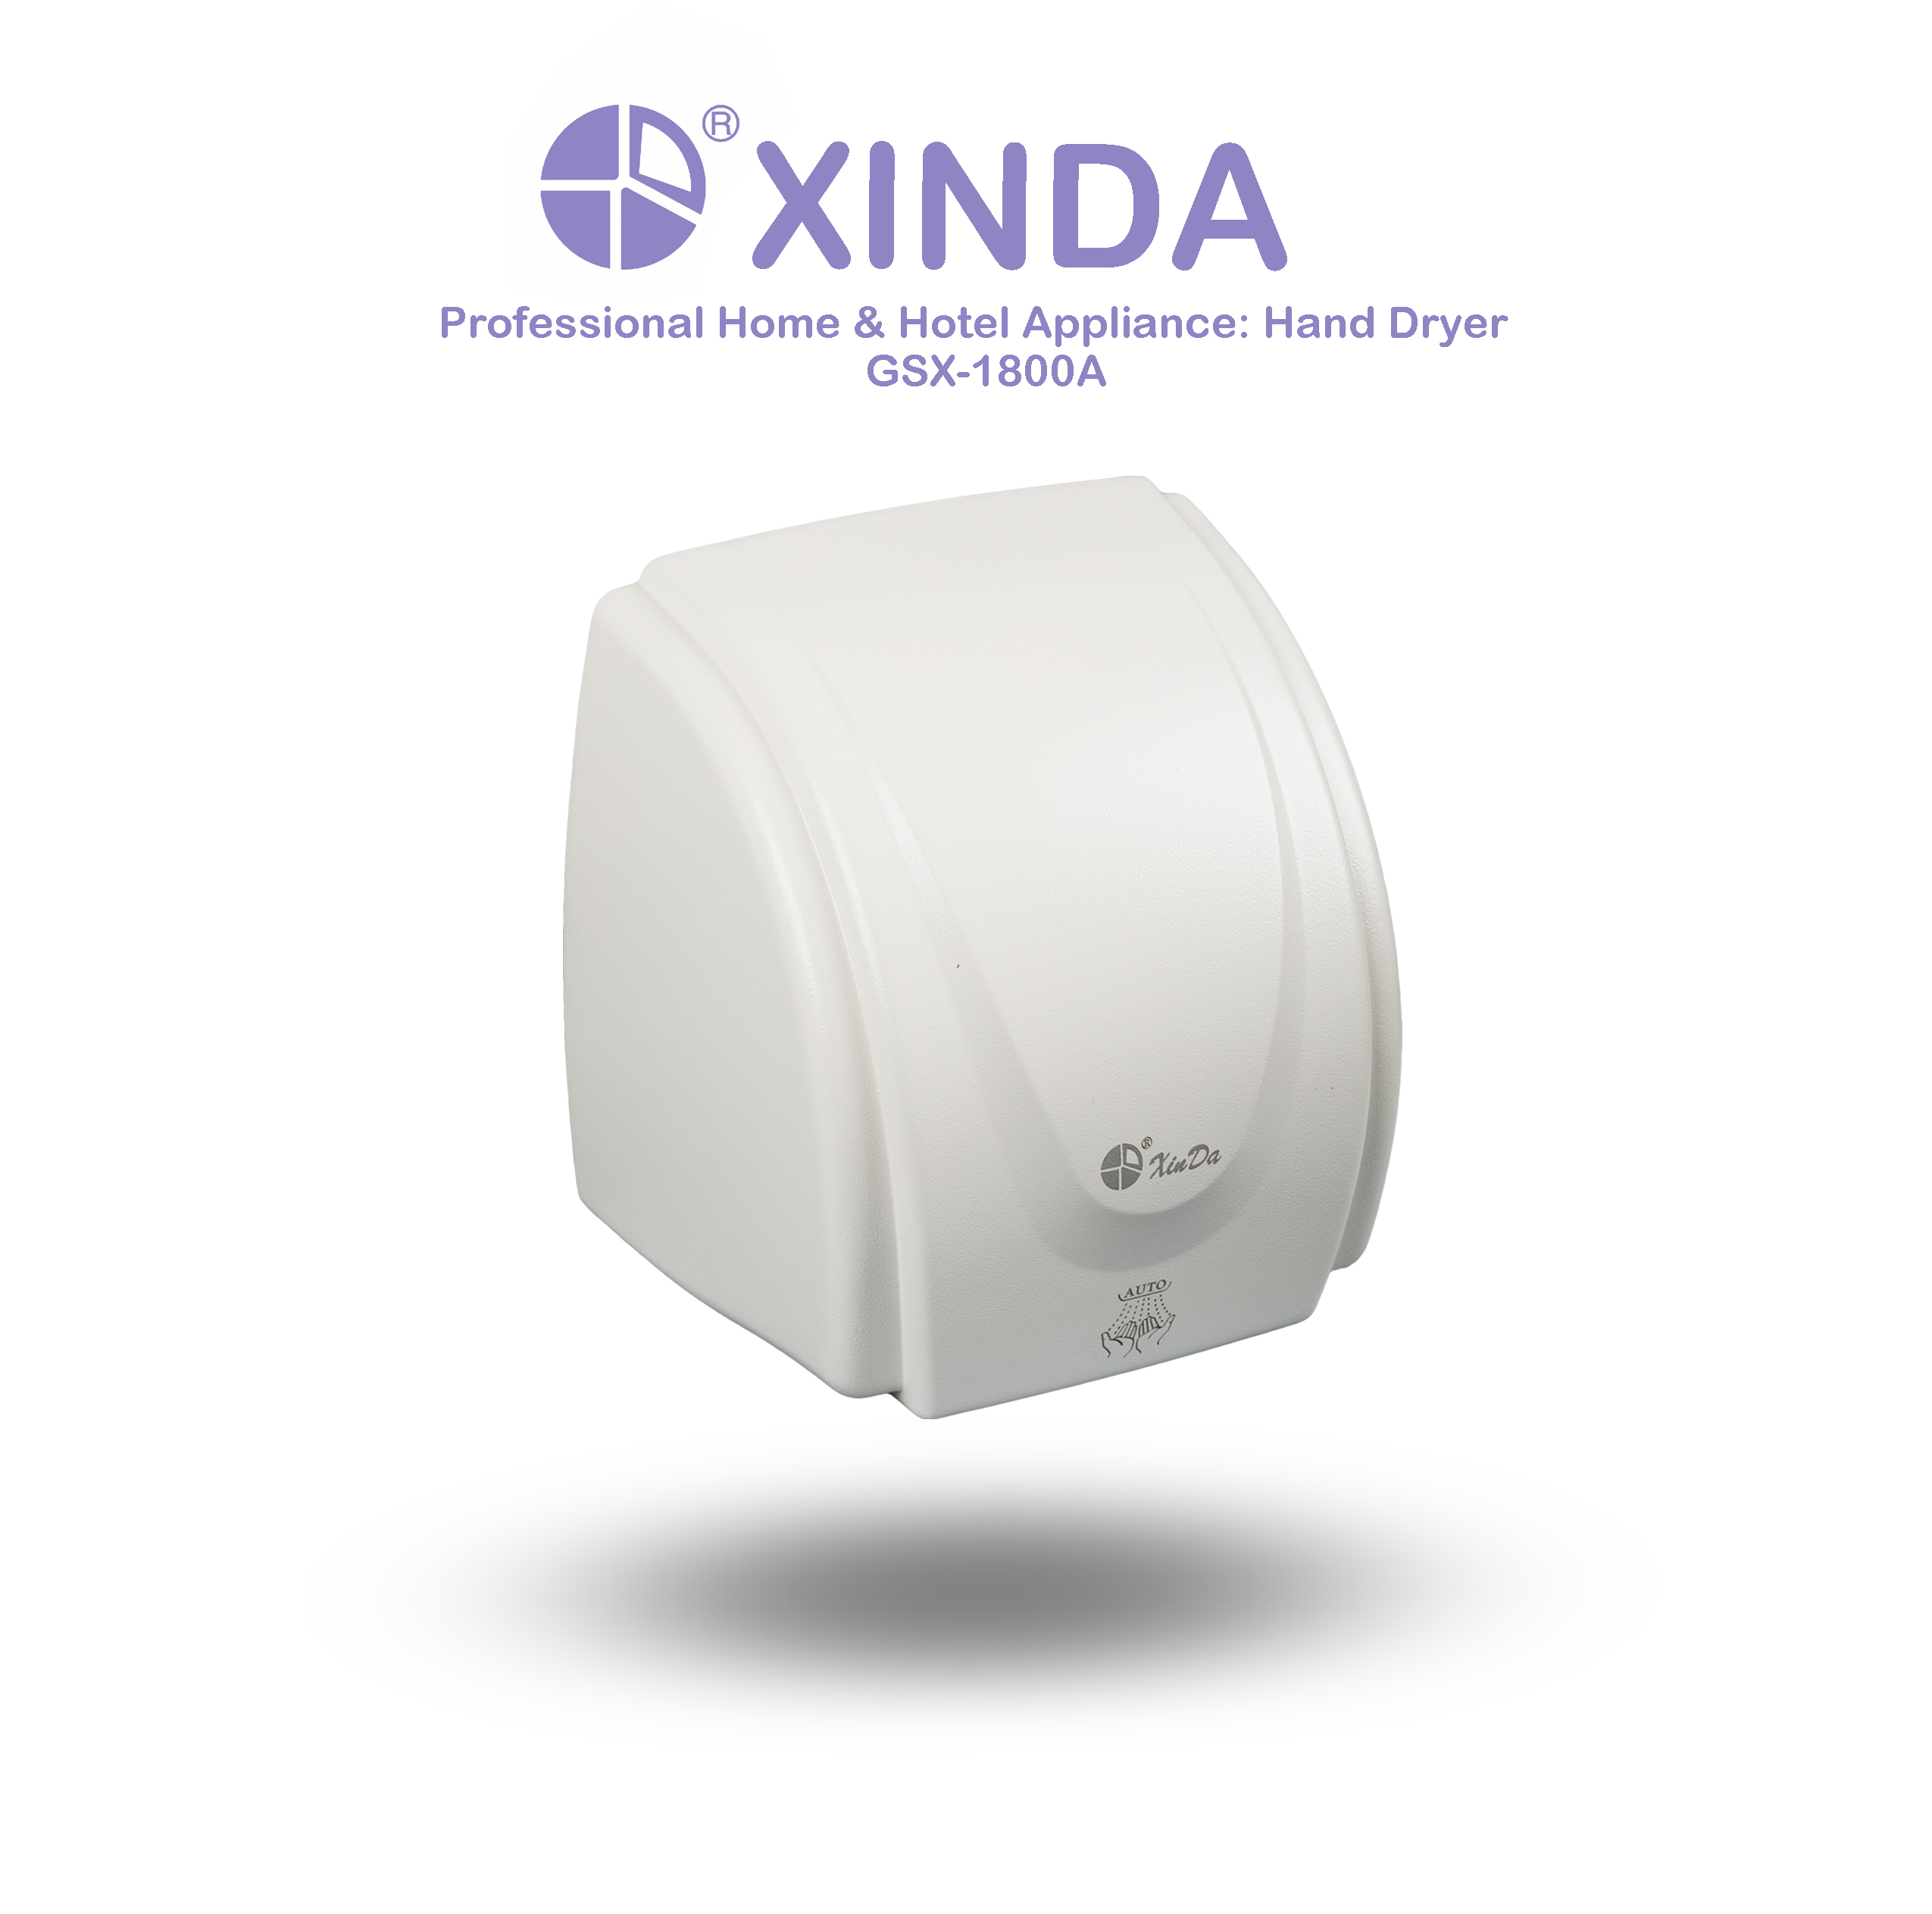 Le XinDa GSX1800A Hotel capteur automatique sèche-mains professionnel automatique corps en plastique blanc mural sèche-mains